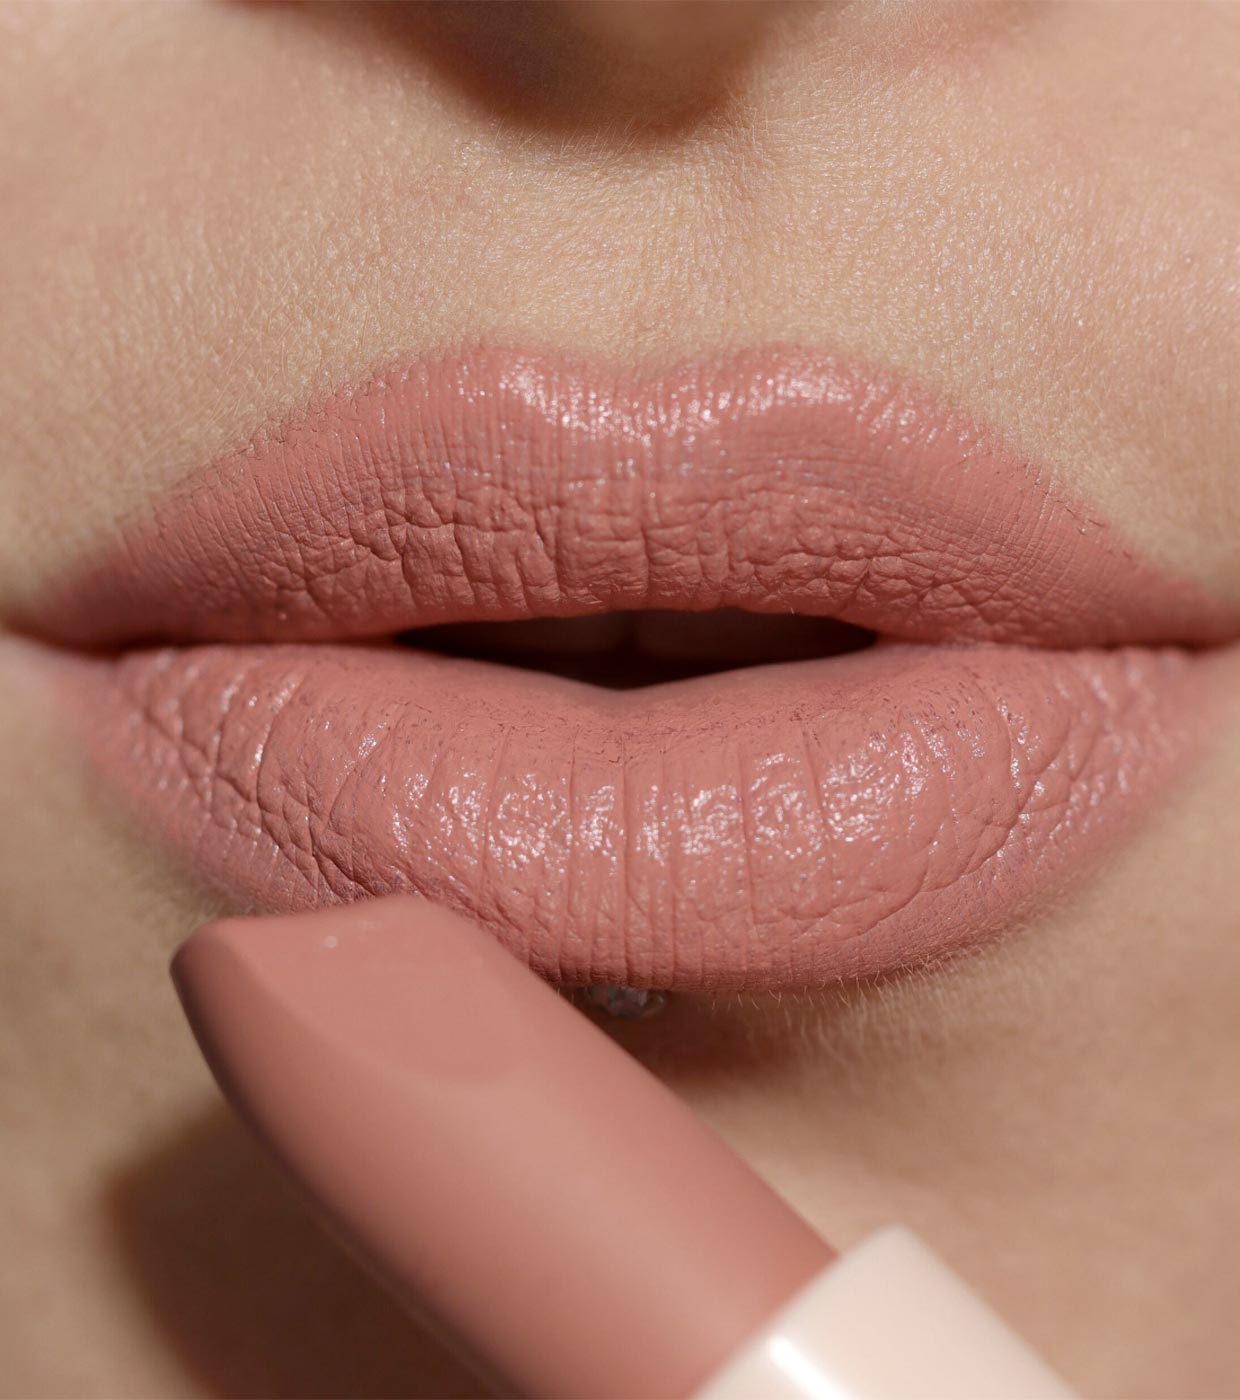 Revolution - Barra de labios satinada Lip Allure - Brunch Pink Nude